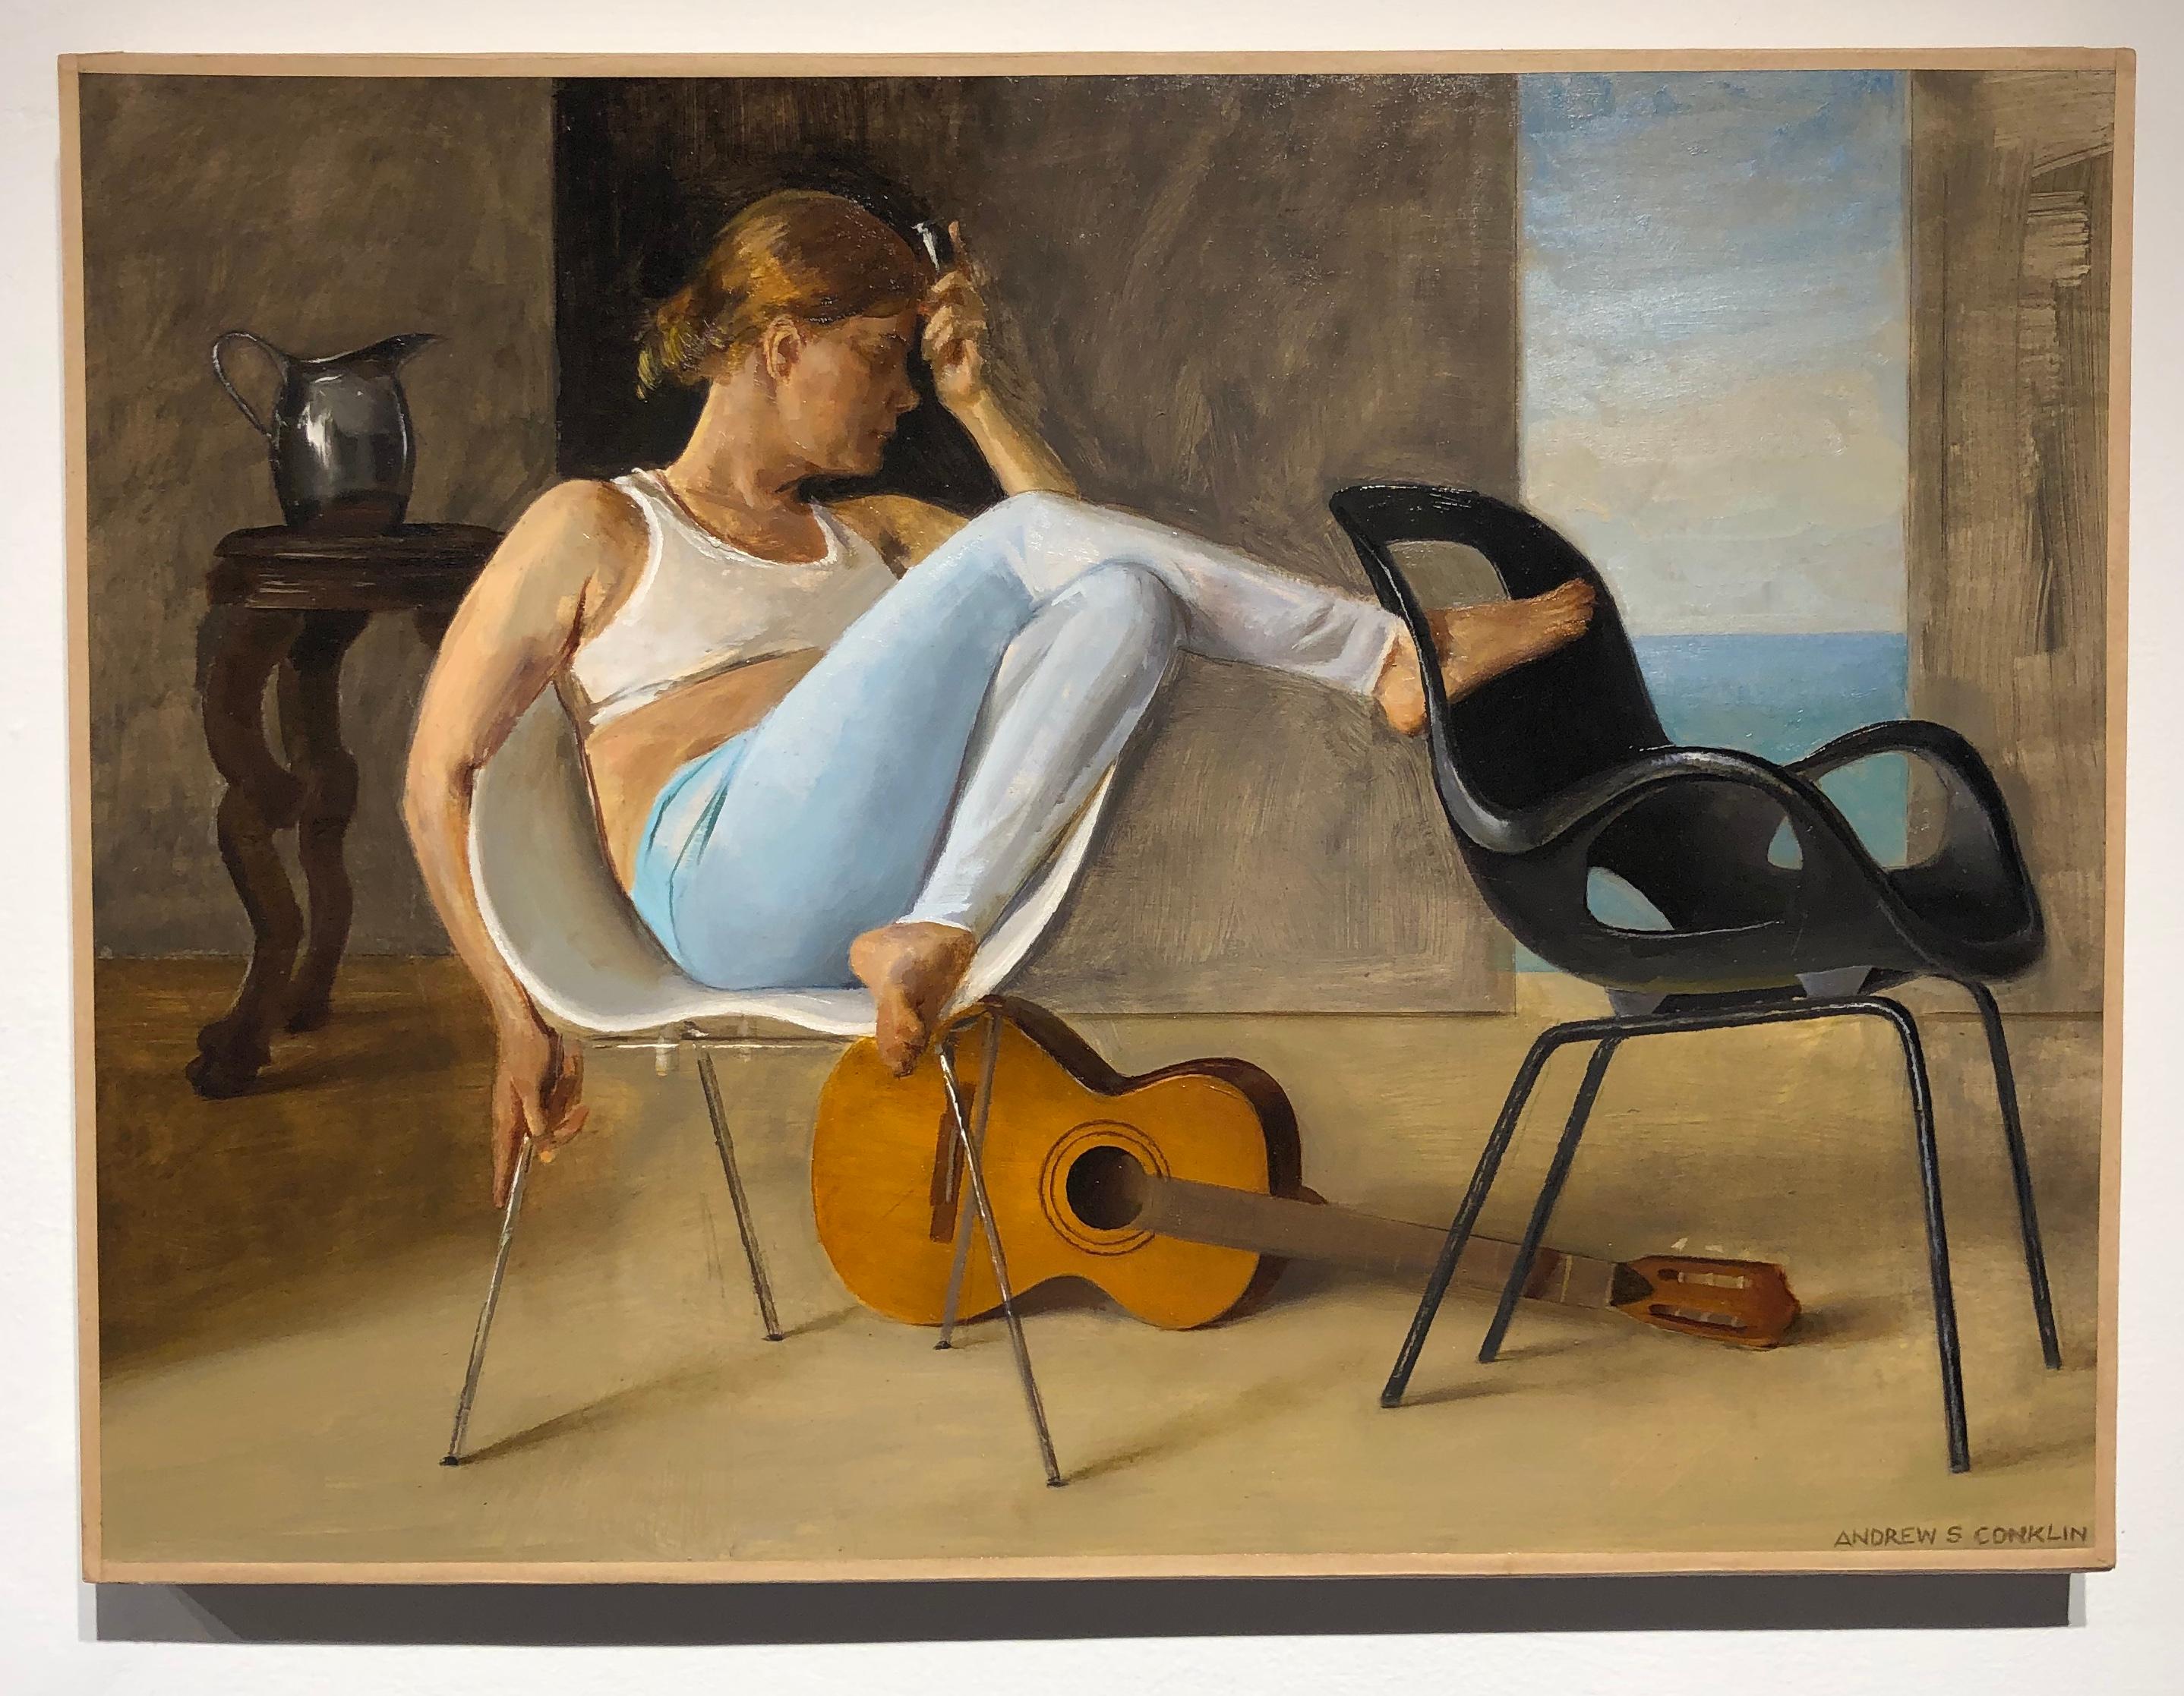 Ashley avec guitare, femme allongée sur une chaise Tom Vac, huile sur panneau d'origine - Painting de Andrew S. Conklin